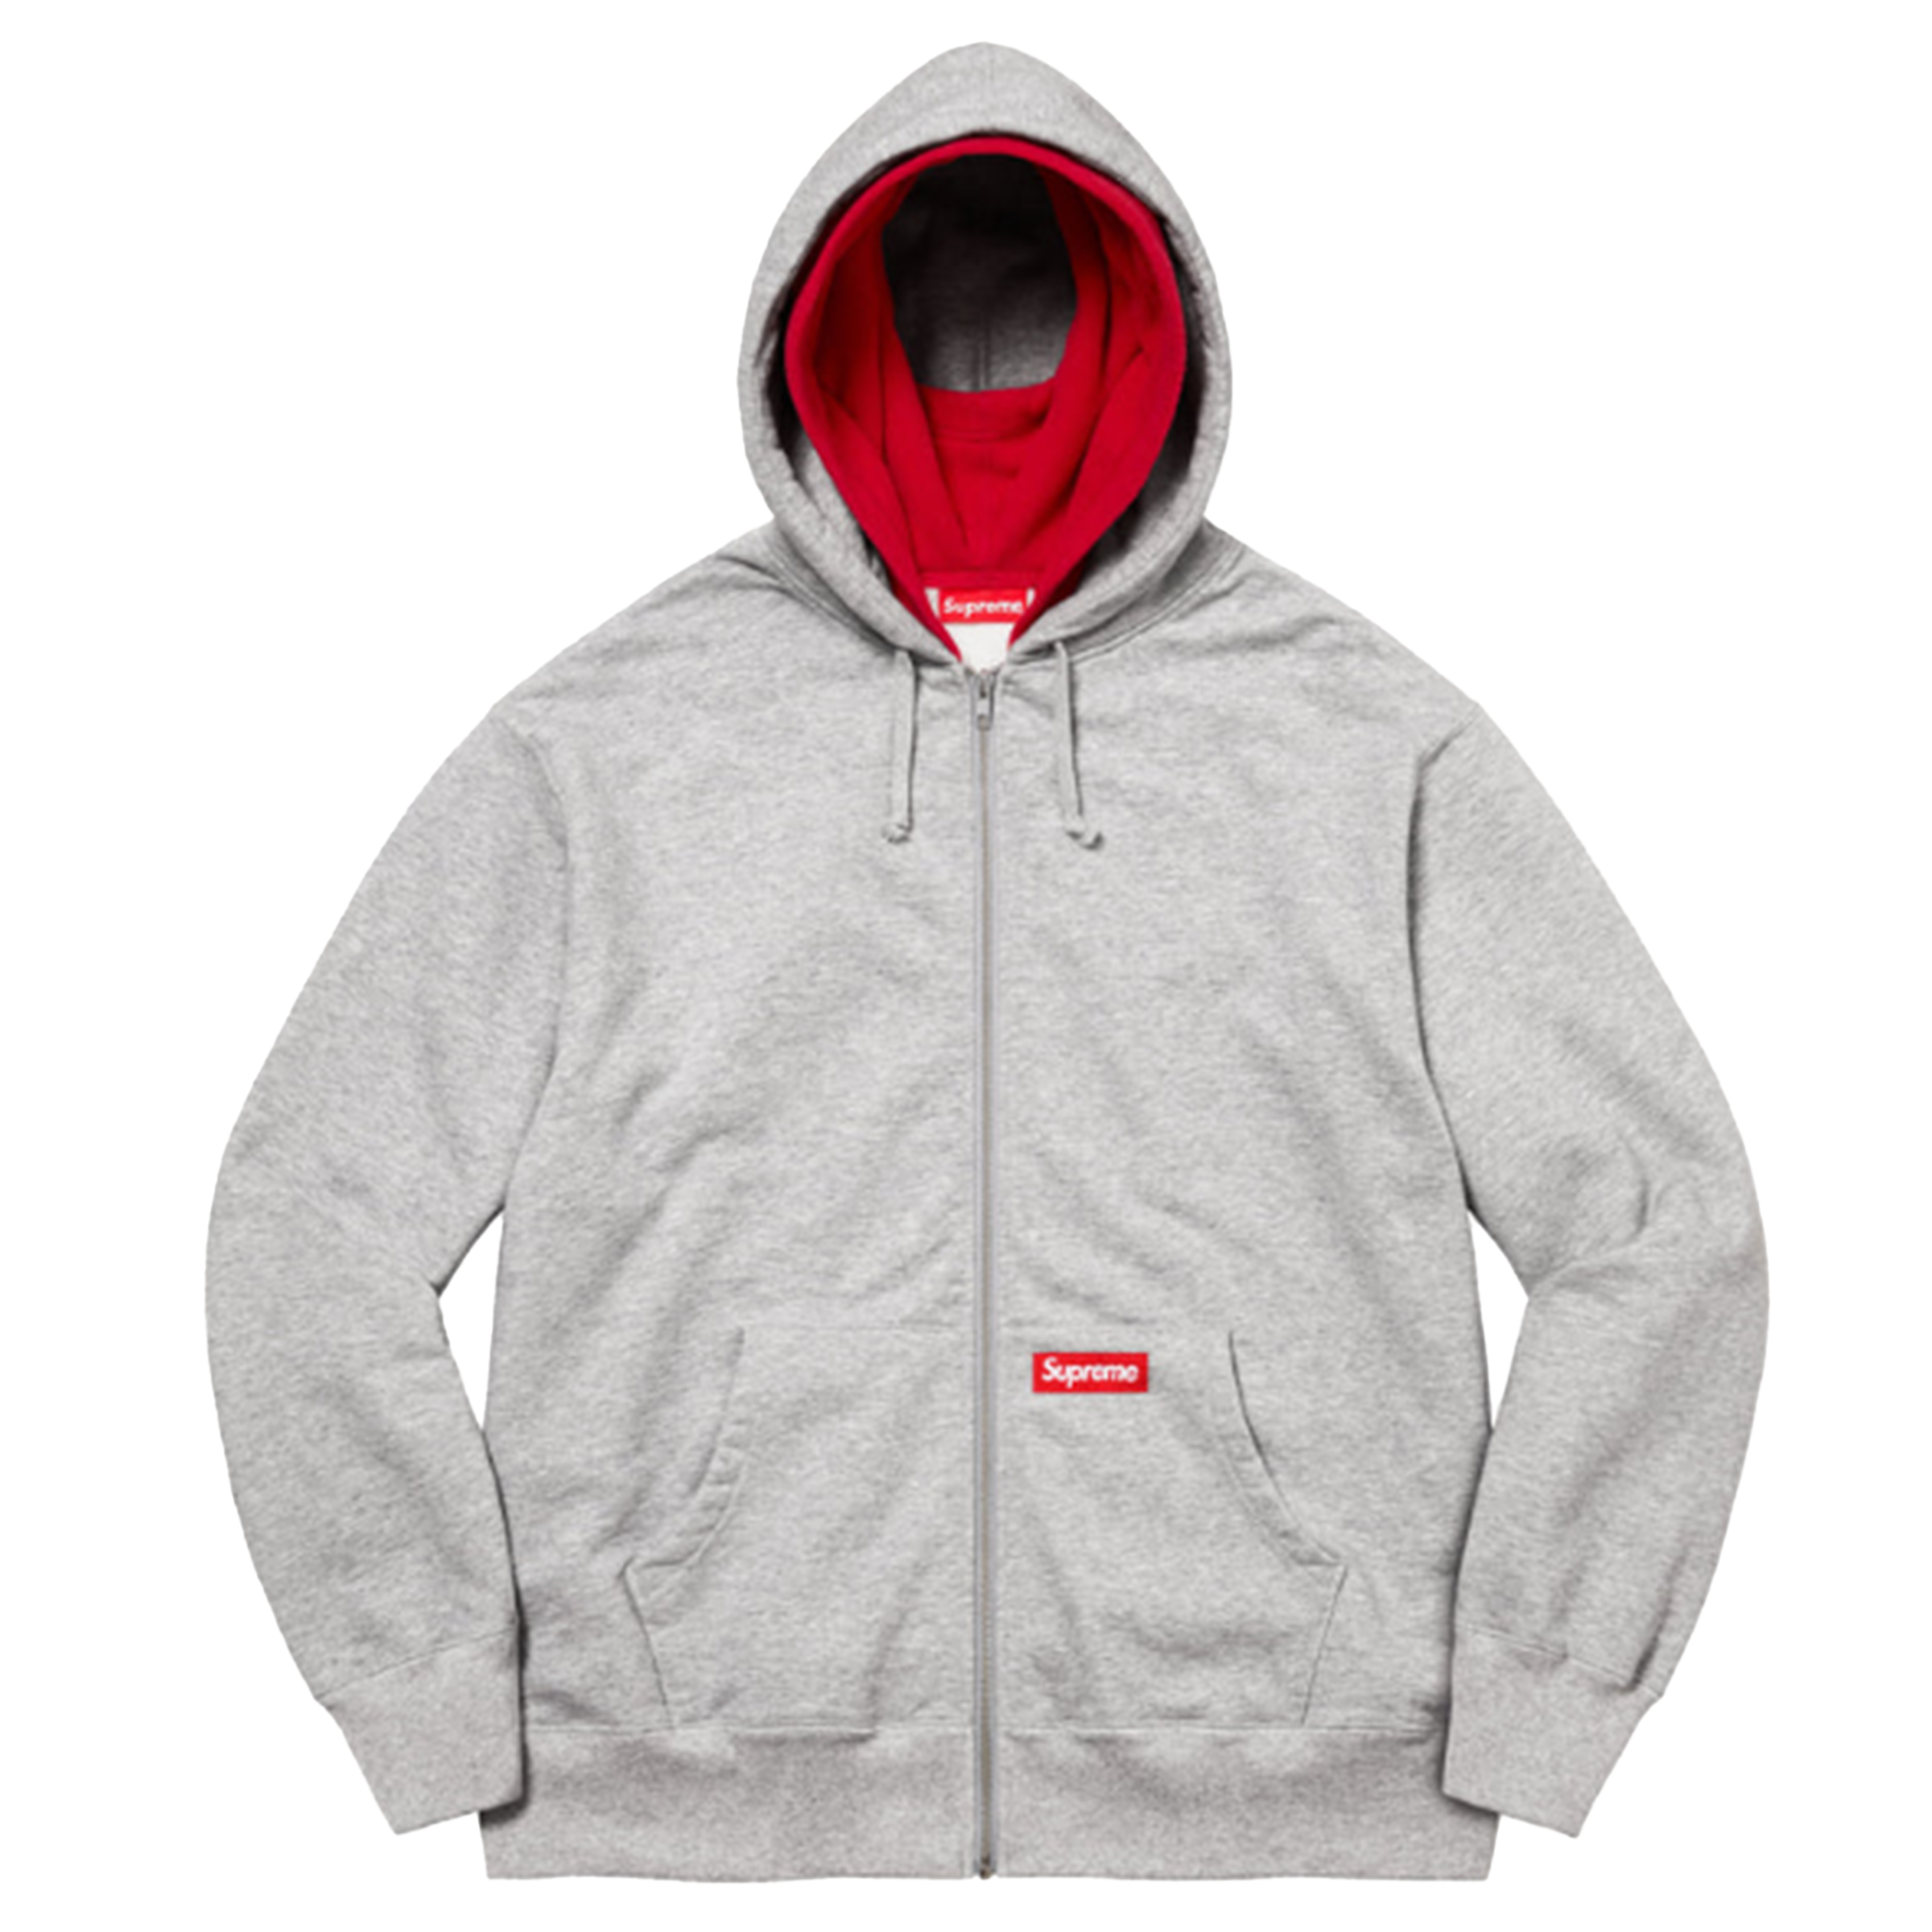 Supreme zip up hoodie